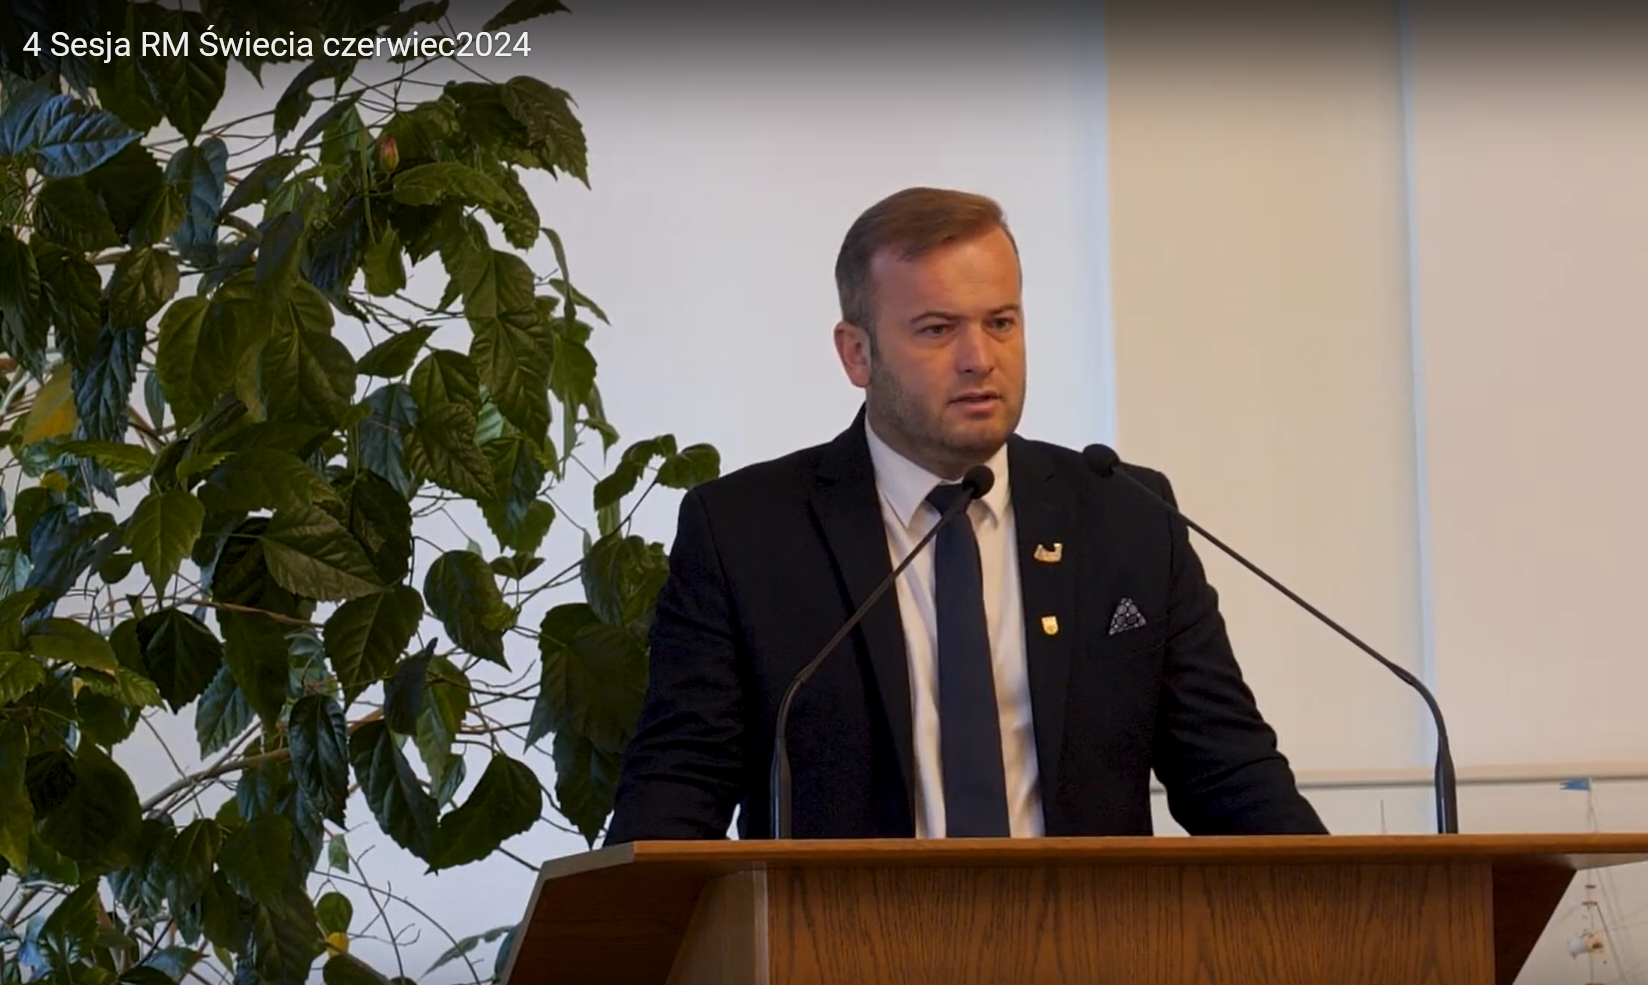 Burmistrz Świecia Krzysztof Kułakowski za mównicą podczas 4 sesji Rady Miejskiej w Świeciu w roku 2024